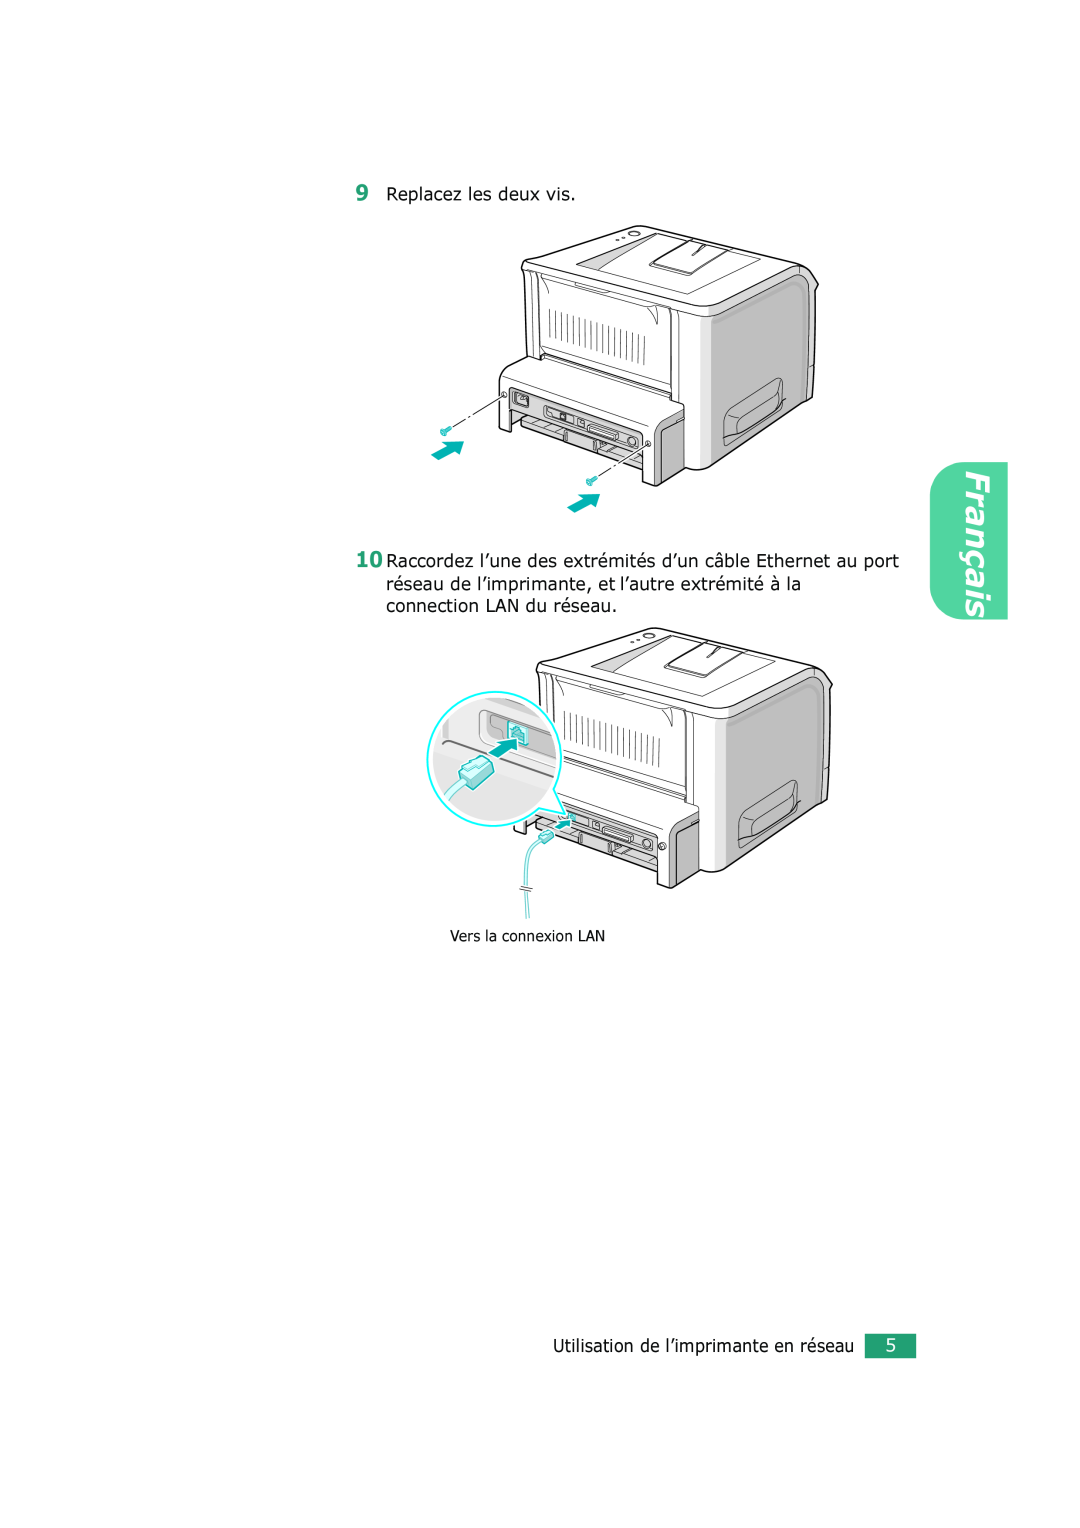 Xerox 3150 manual Replacez les deux vis, Vers la connexion LAN, Français, Utilisation de l’imprimante en réseau 